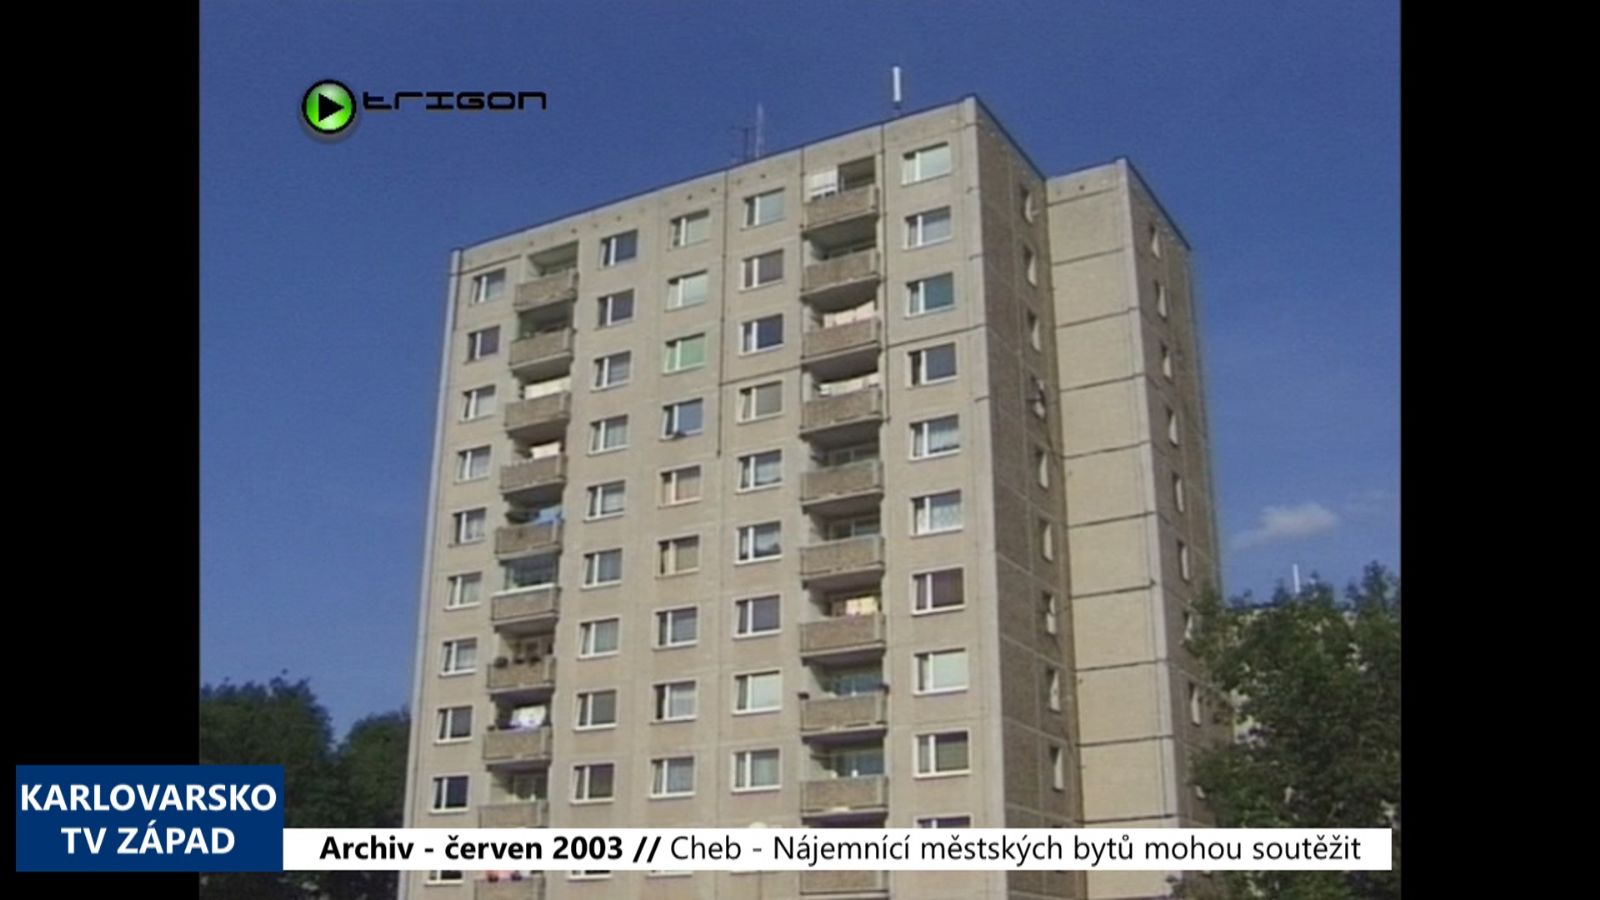 2003 – Cheb: Nájemníci městských bytů mohou soutěžit (TV Západ)